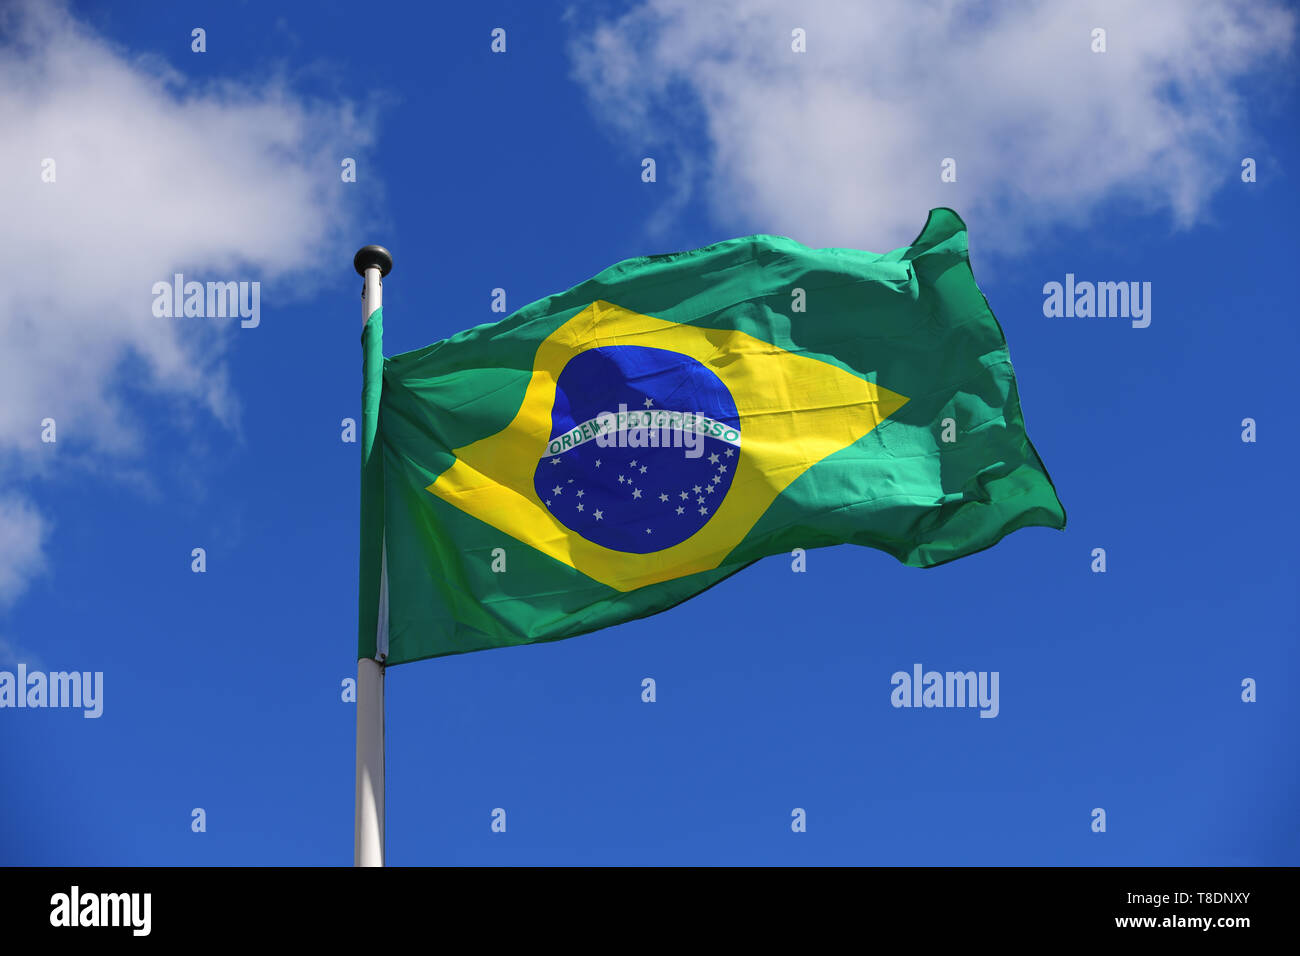 Flagge von Brasilien winken im Wind vor einem blauen sonnigen Himmel mit Wolken. Hohe Auflösung, Konzept für Reise und Tourismus. Stockfoto